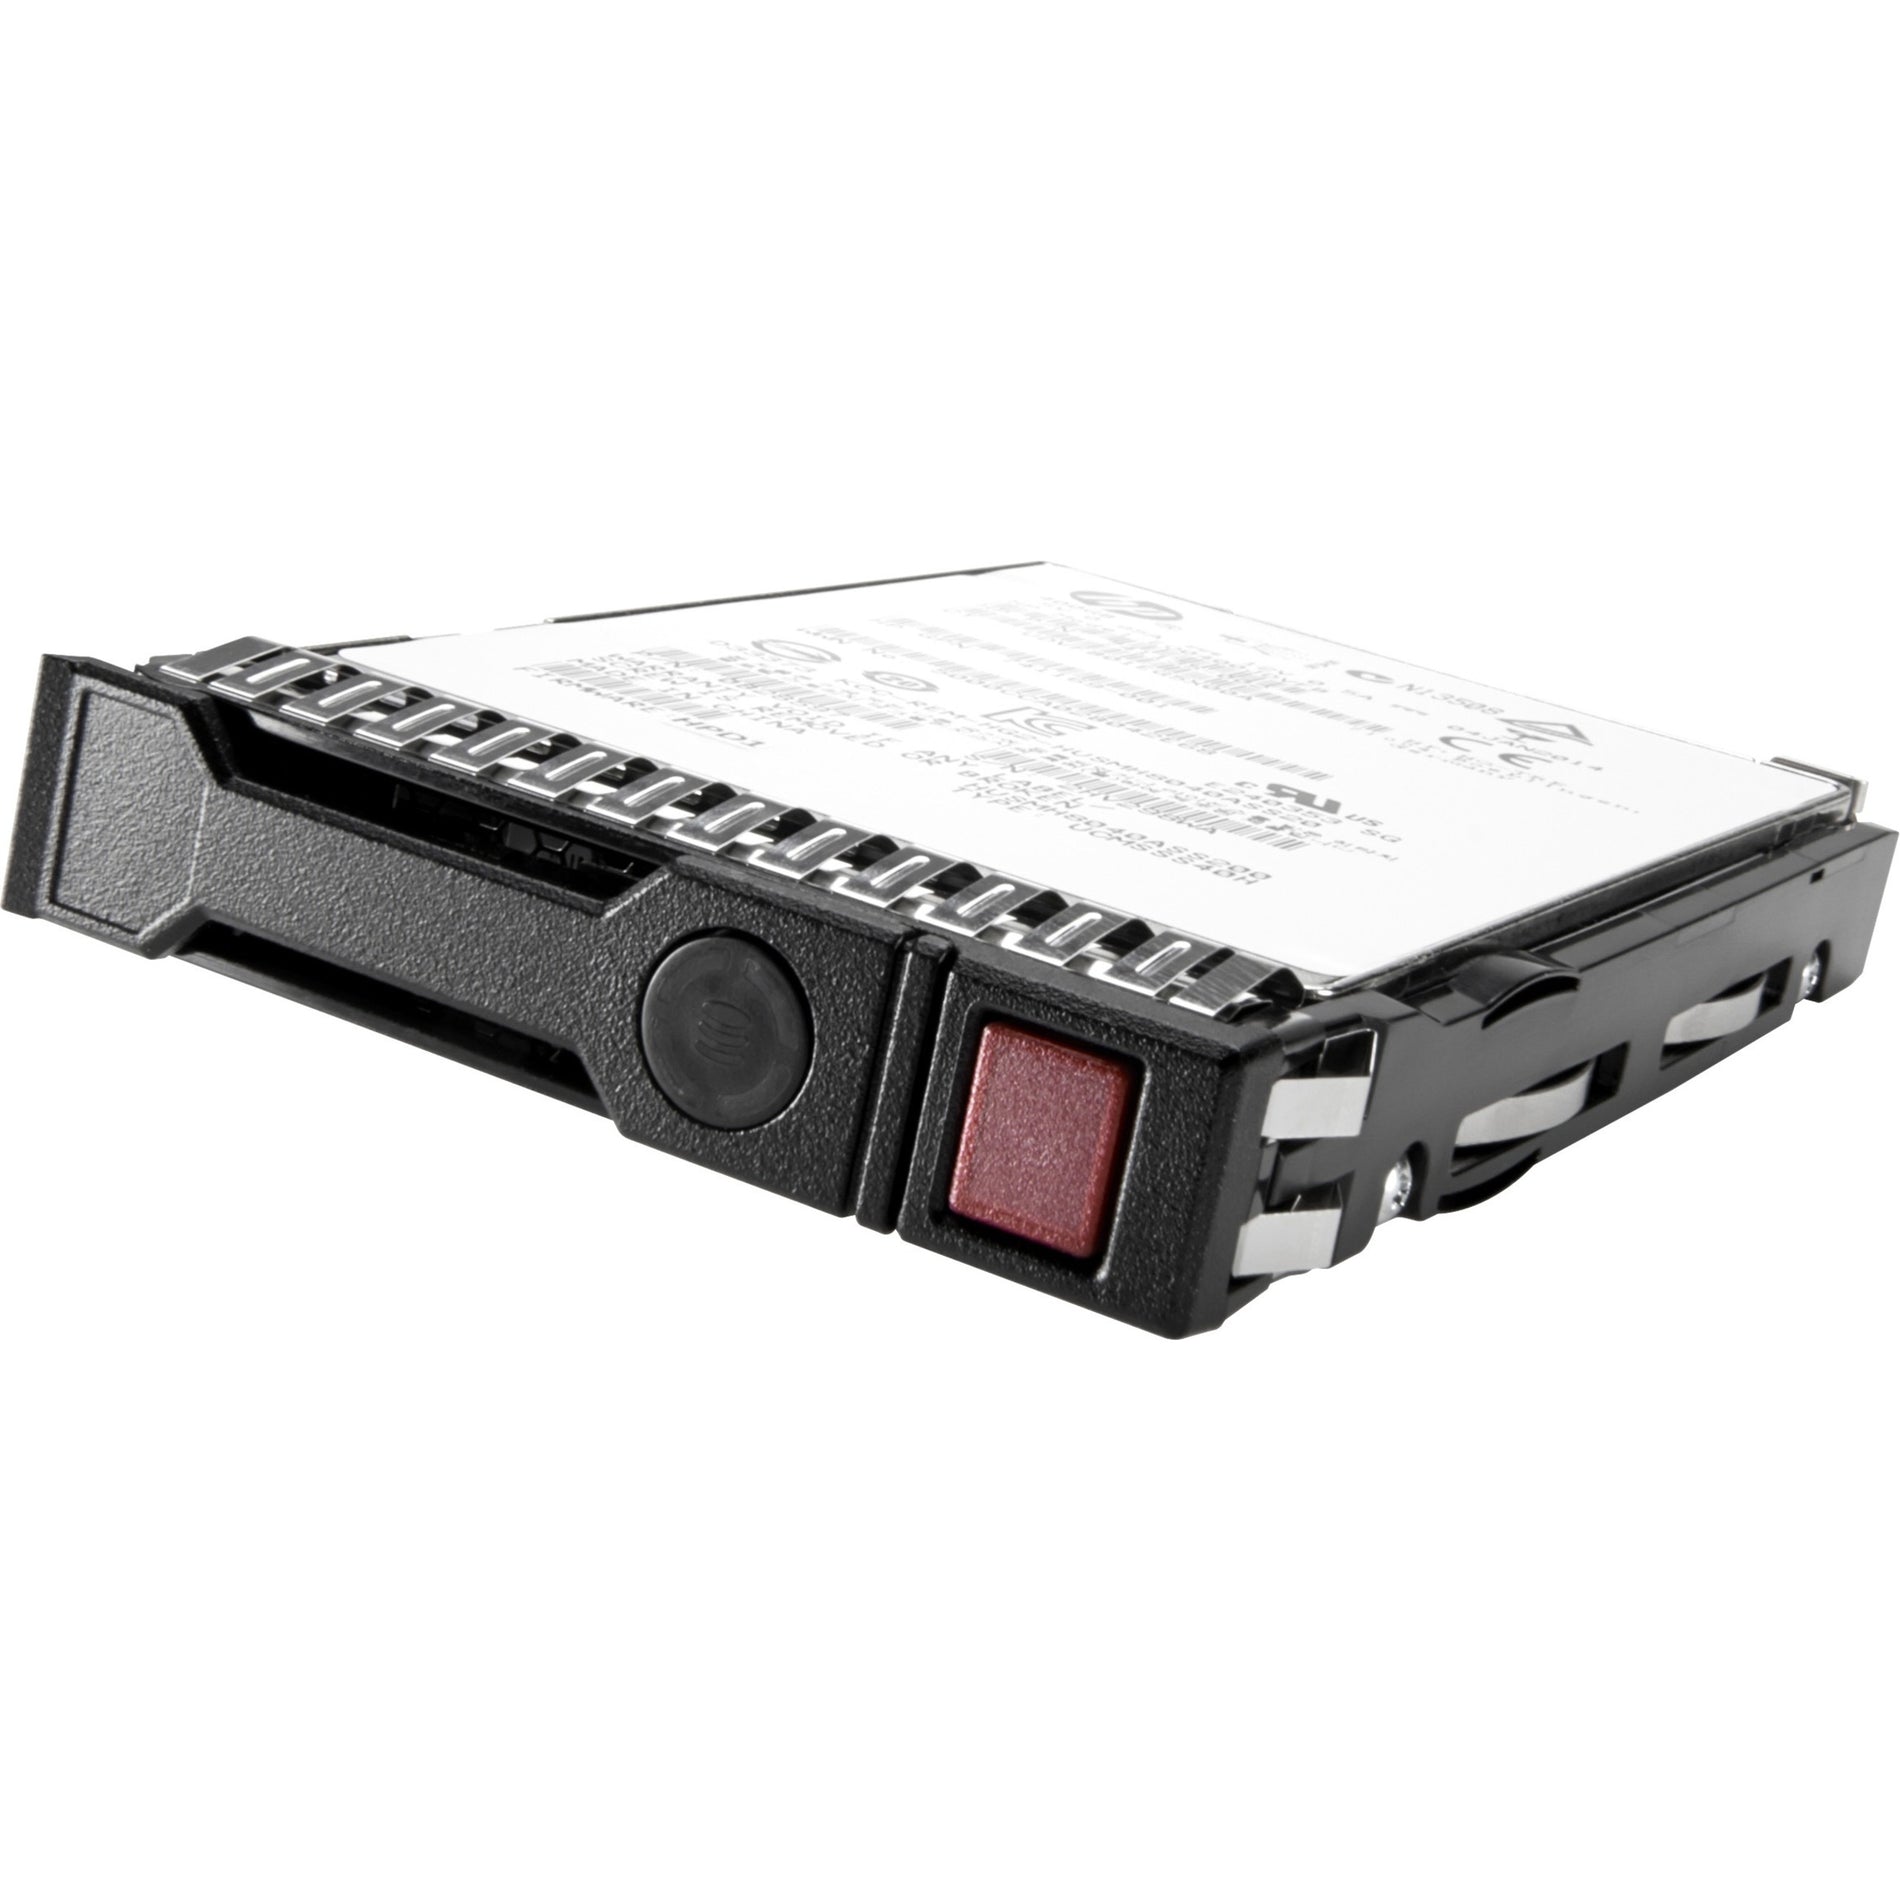 HPE 861750-B21 6TB SATA 6G Midline 7.2K LFF (3.5in) SC 1yr Wty 512e HDD, 6 TB Internal SATA Hard Drive